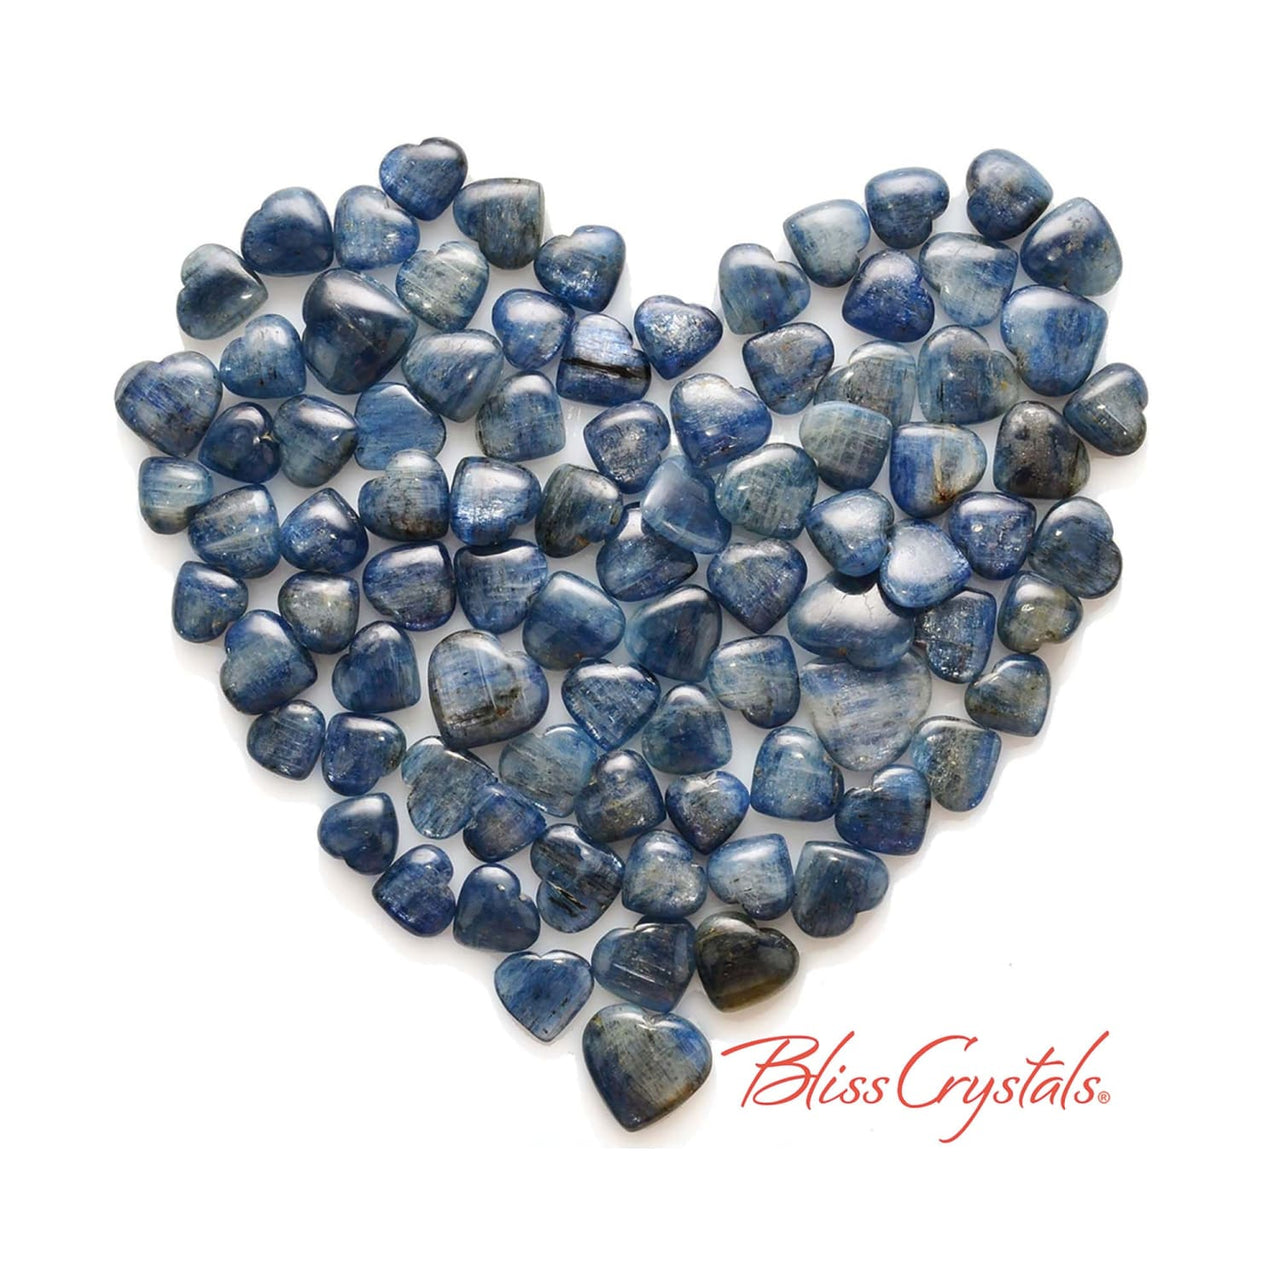 Gemmy! 1 BLUE KYANITE Mini Heart Polished Tumbled Stone 